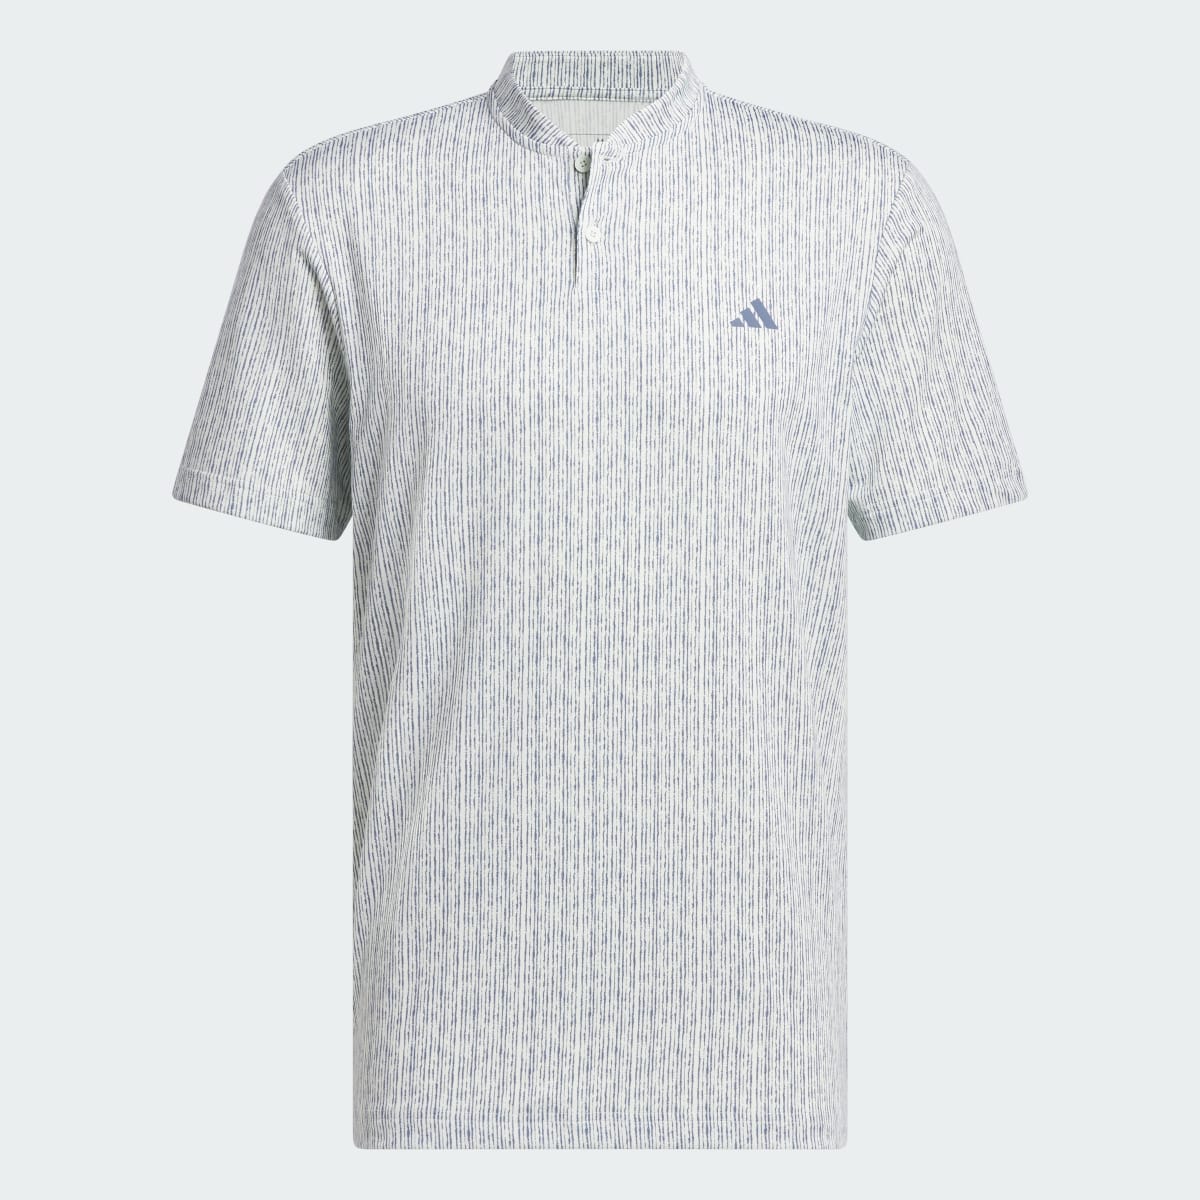 Adidas Ultimate365 Printed Polo Shirt. 5